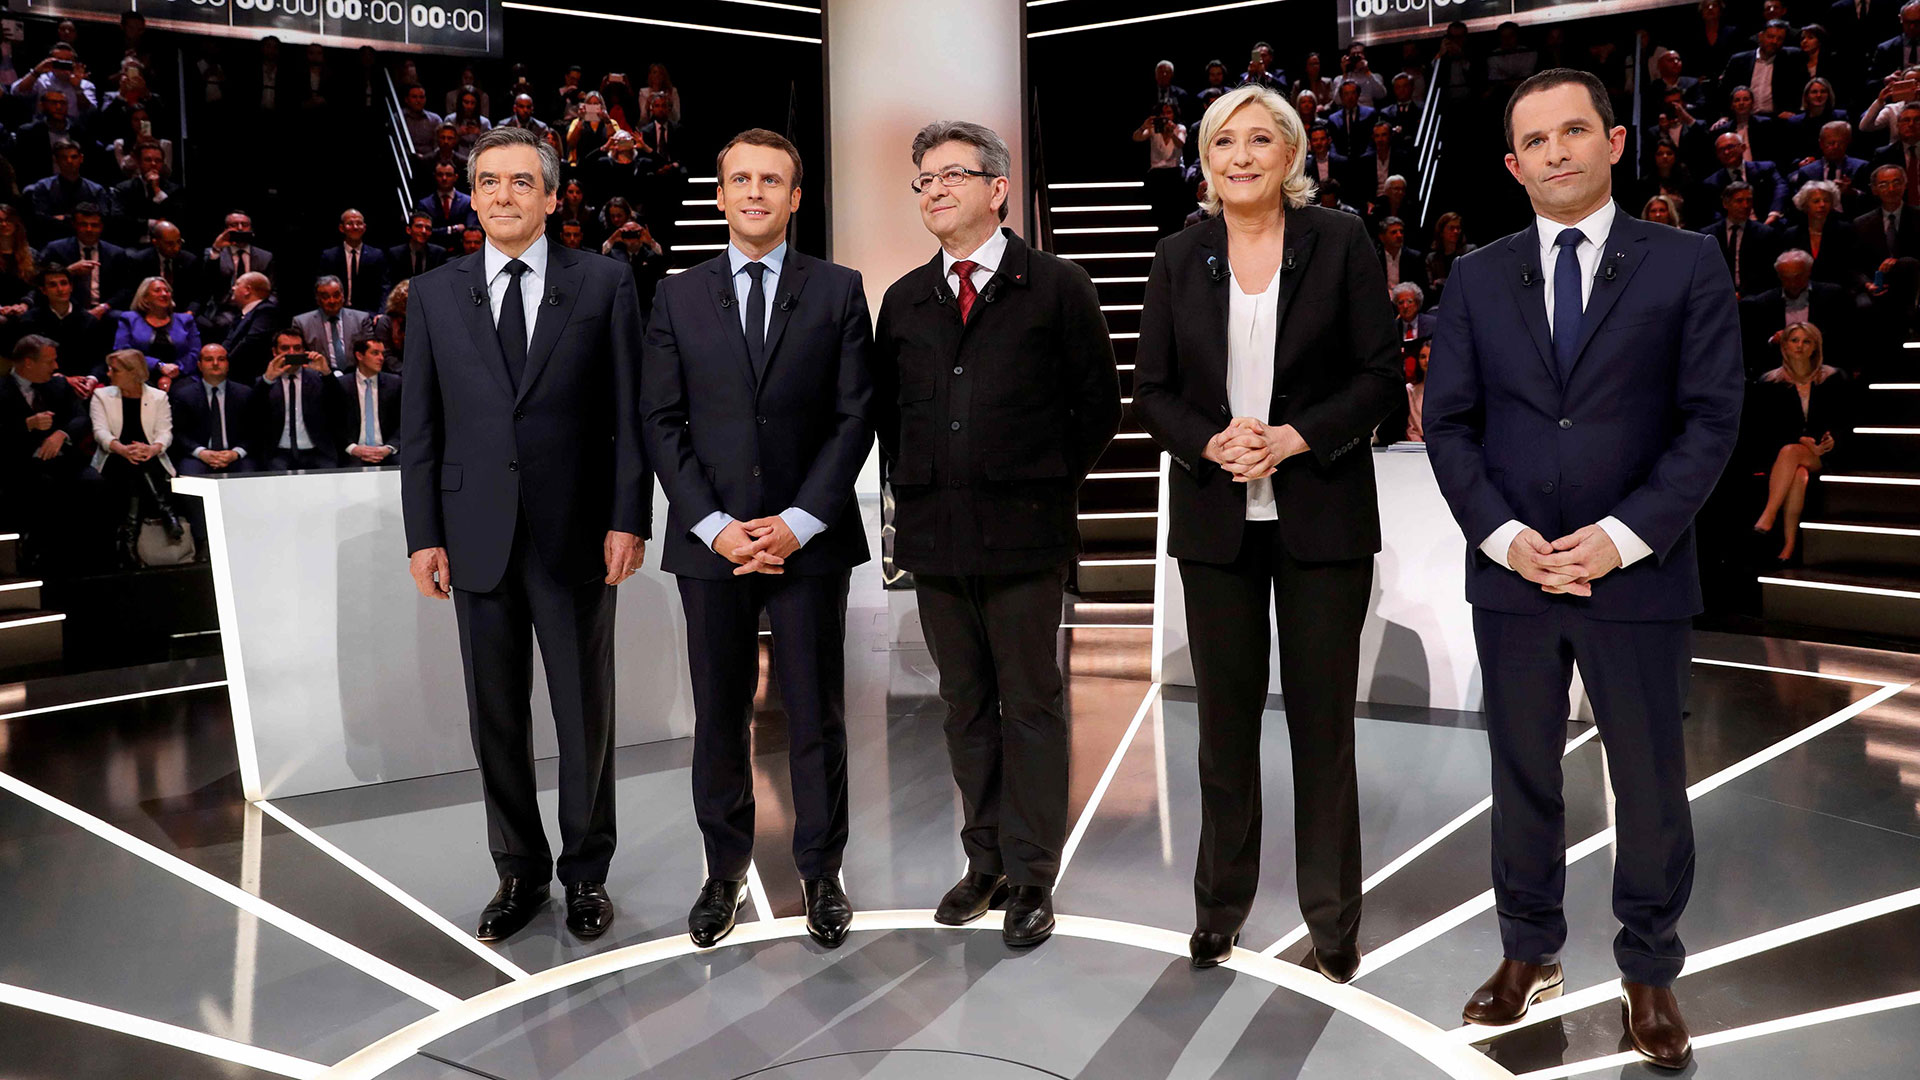 El gran debate francés: Elecciones presidenciales 2017